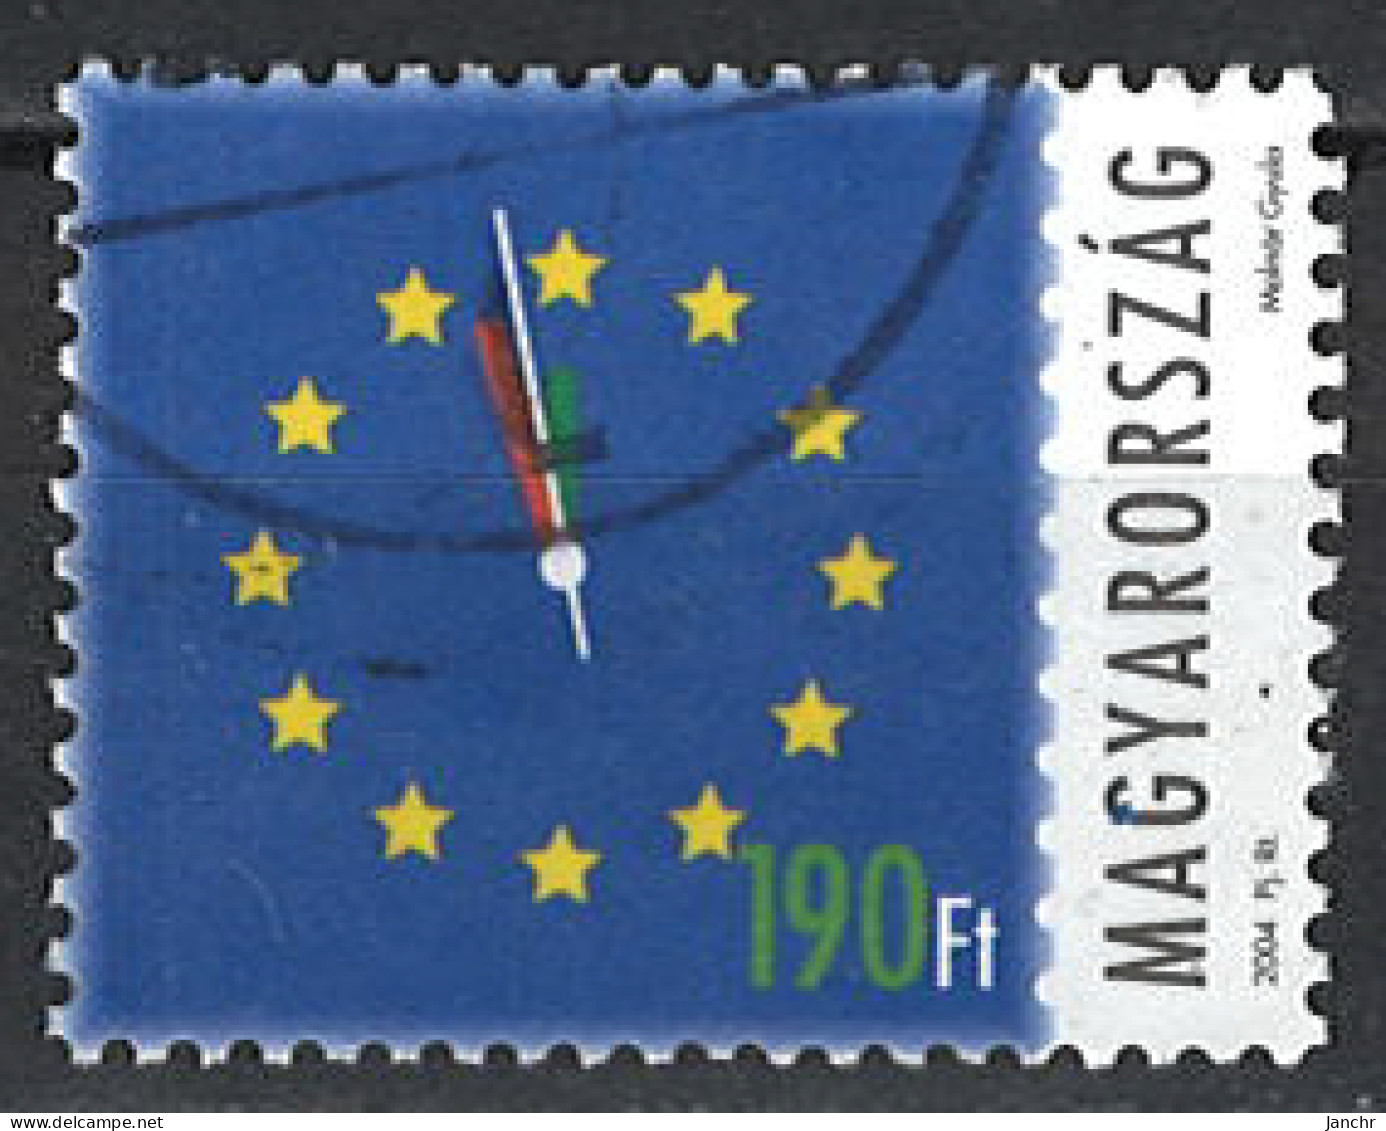 Ungarn Hungary 2004. Mi.Nr. 4844, Used O - Gebruikt